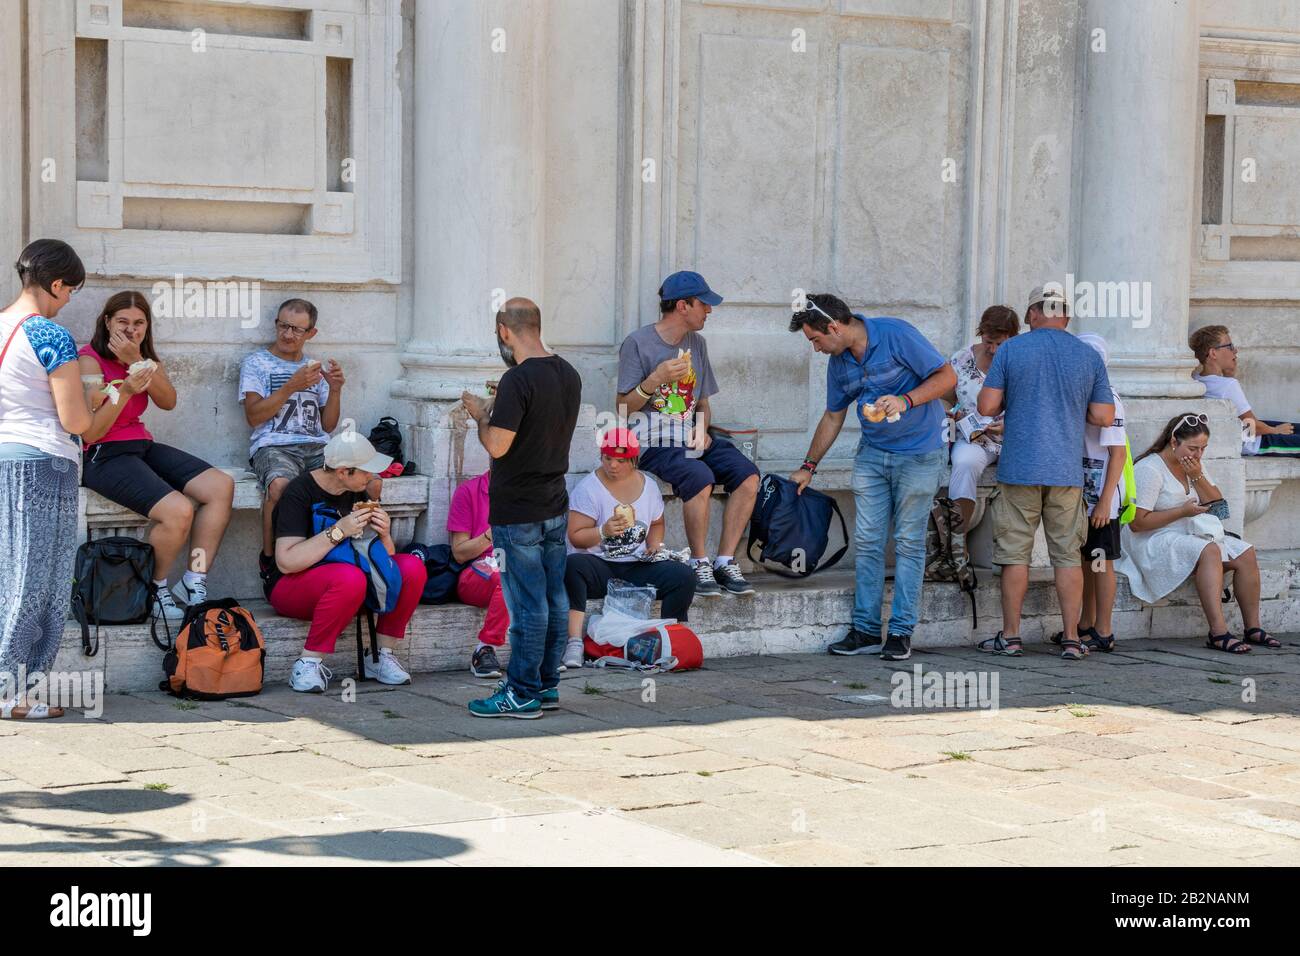 Turisti che mangiano e si siedono su gradini di un edificio, Venezia, italia. Nuove leggi a Venezia Italia contro i turisti che si comportano male. Foto Stock